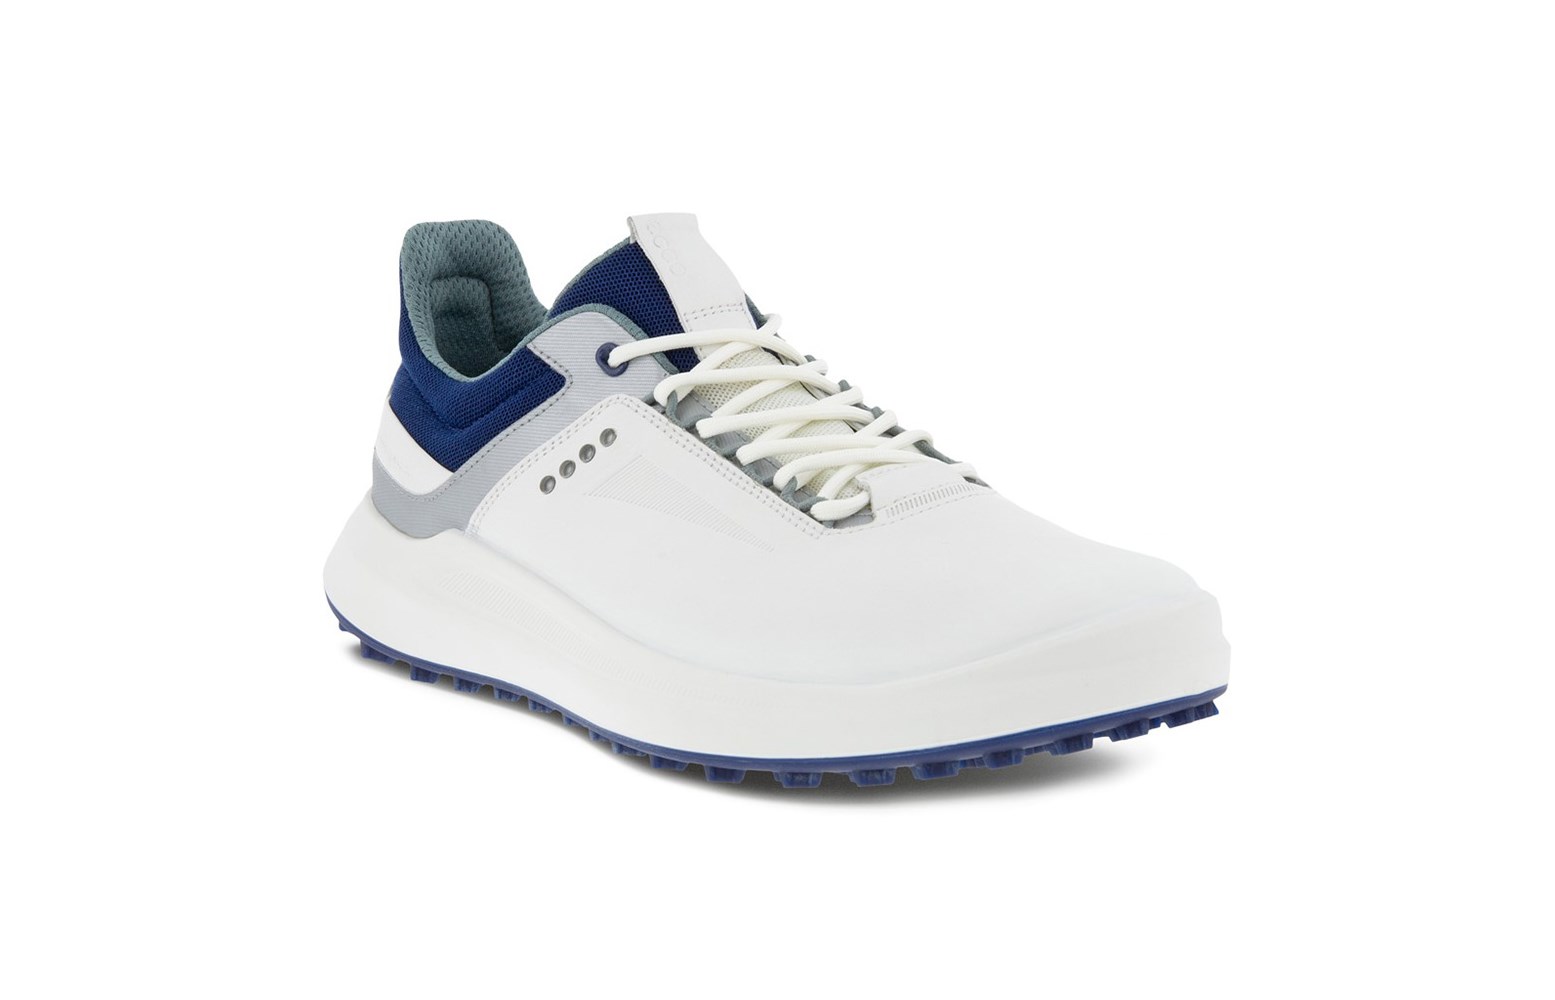 Ecco Mens Core Golf Shoes - Golfonline